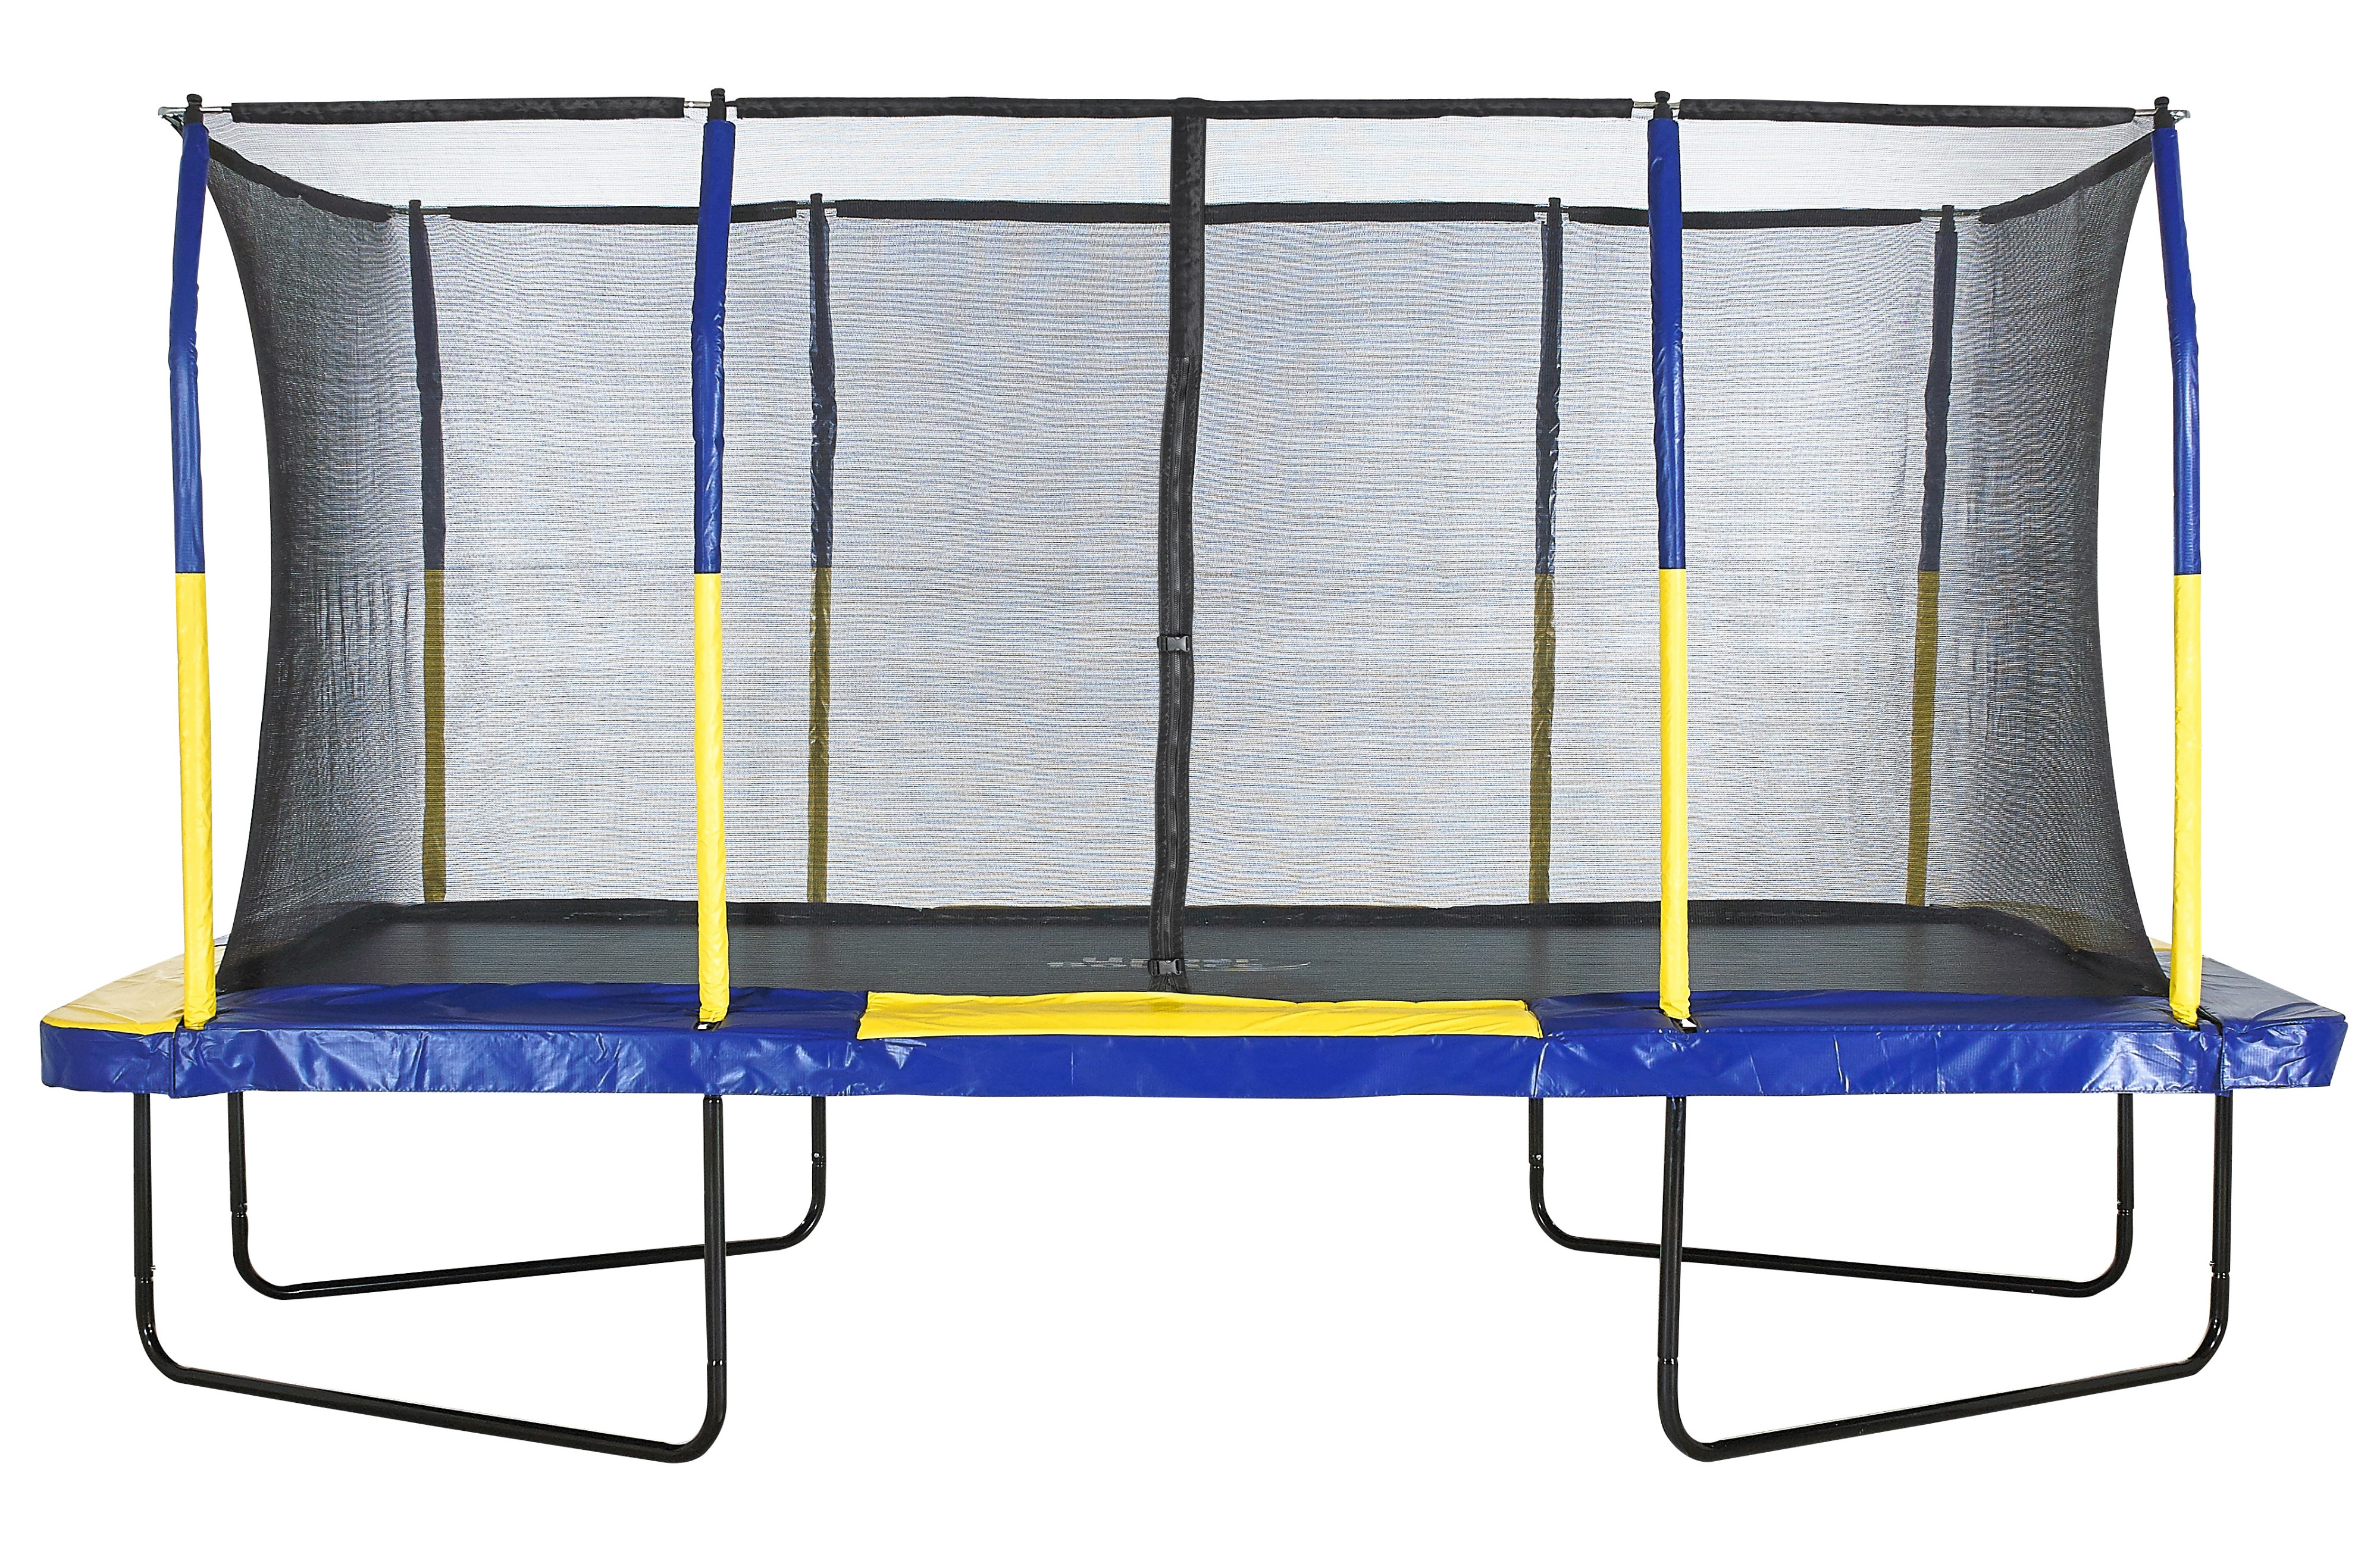 Trampolino Tappeto Elastico Professionale Rettangolare da Giardino Esterno Completo di Rete di Sicurezza | 457 x 274 cm